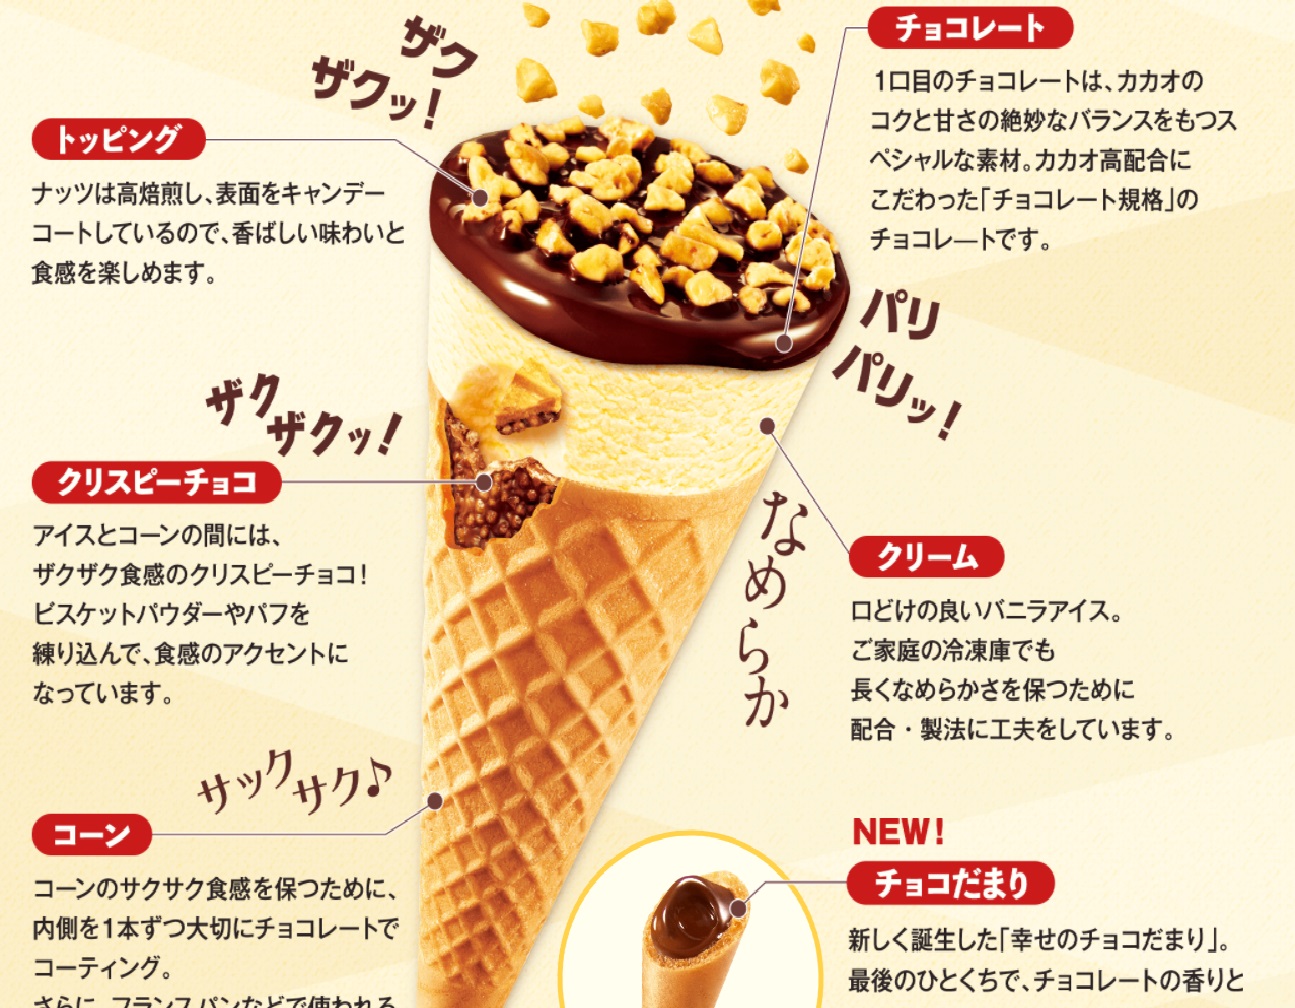 彦根でアイスクリームの最安値はどこだ 調べてみました ジャイアントコーンで比較 びわひこね